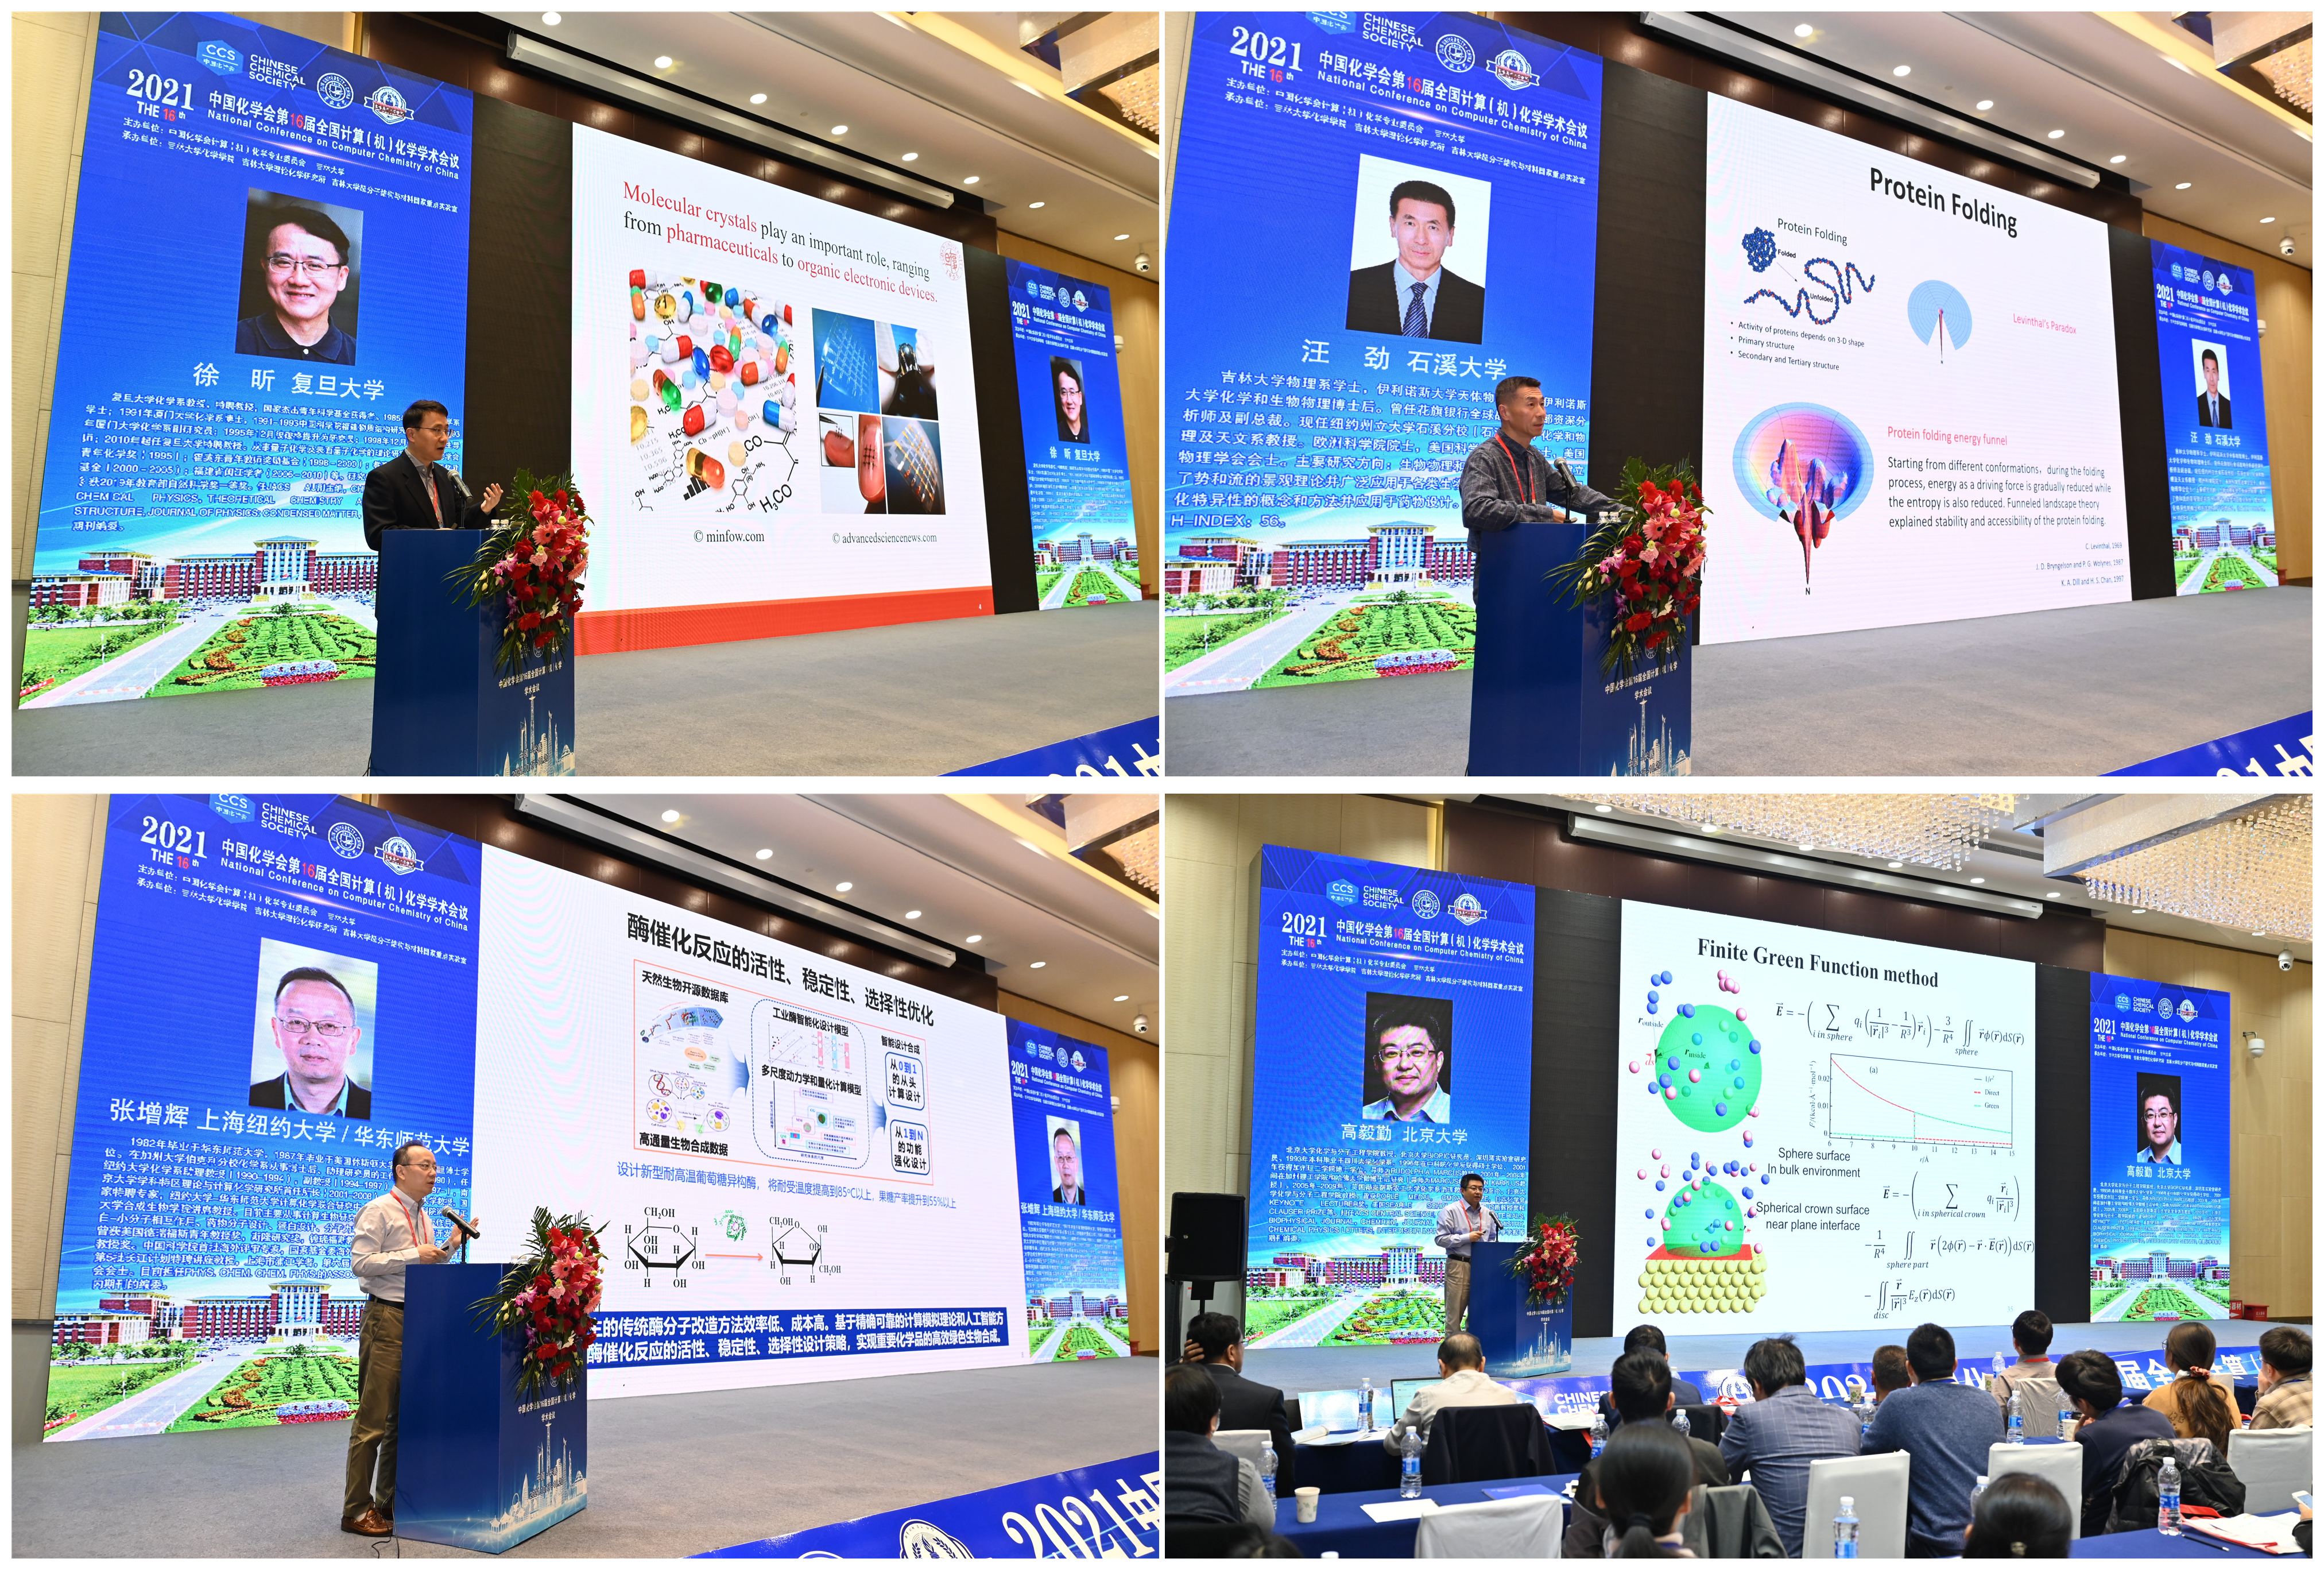 我院成功举办中国化学会第16届全国计算(机)化学学术会议